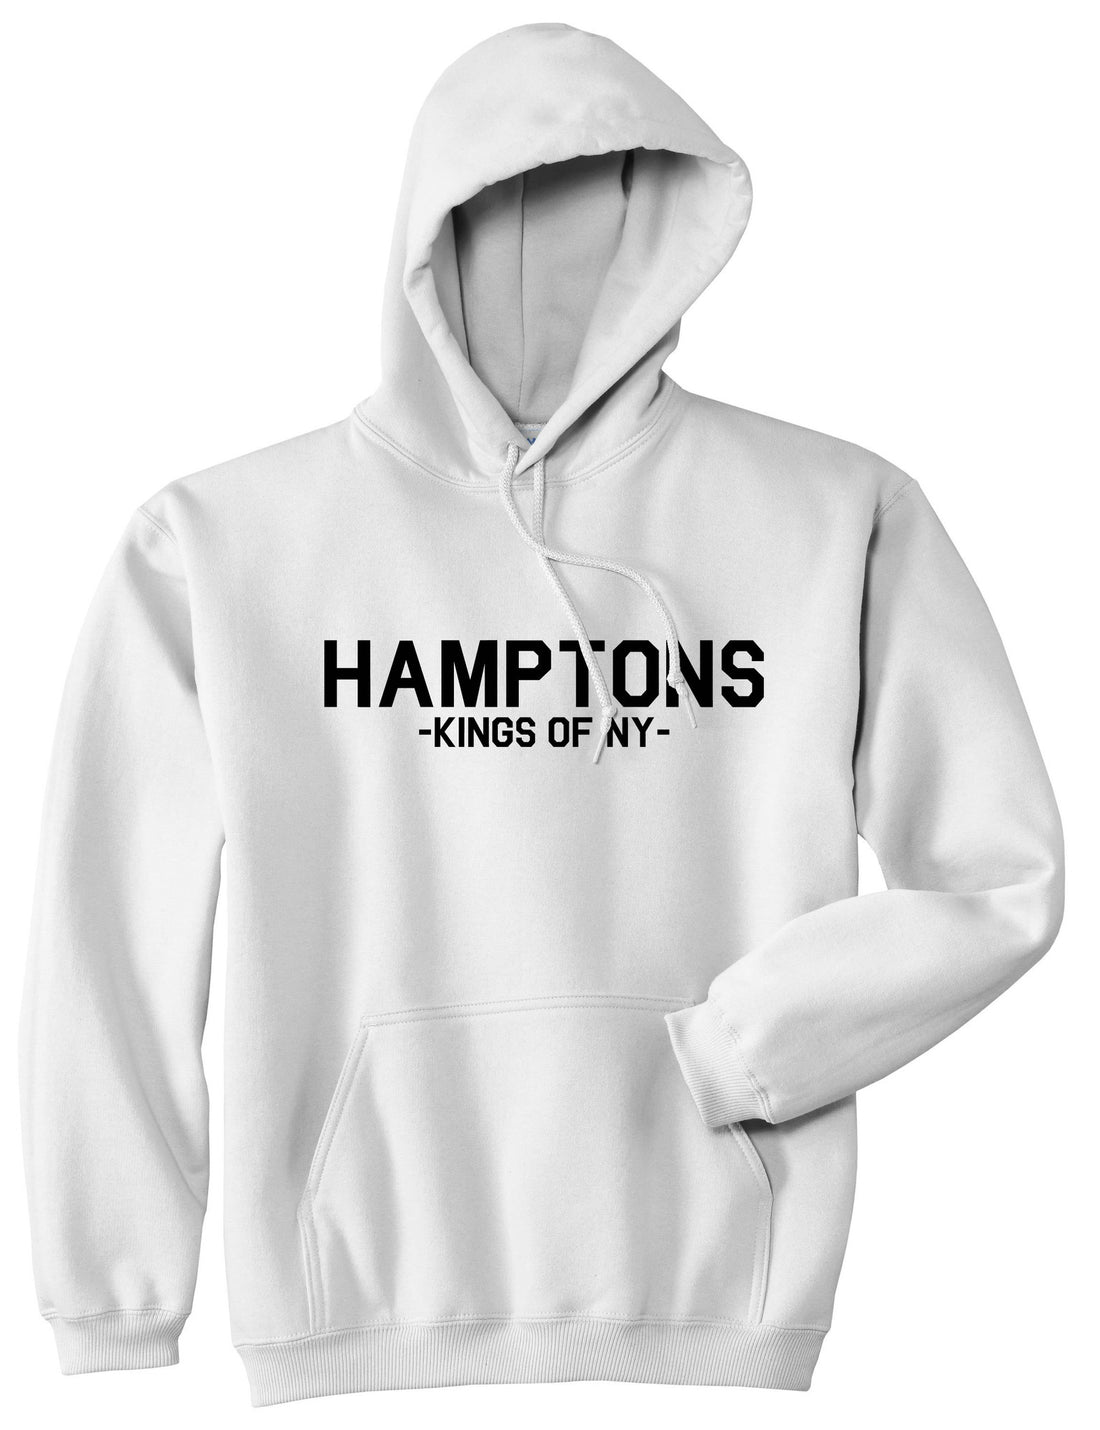 Hamptons New York Pullover Hoodie Hoody in White